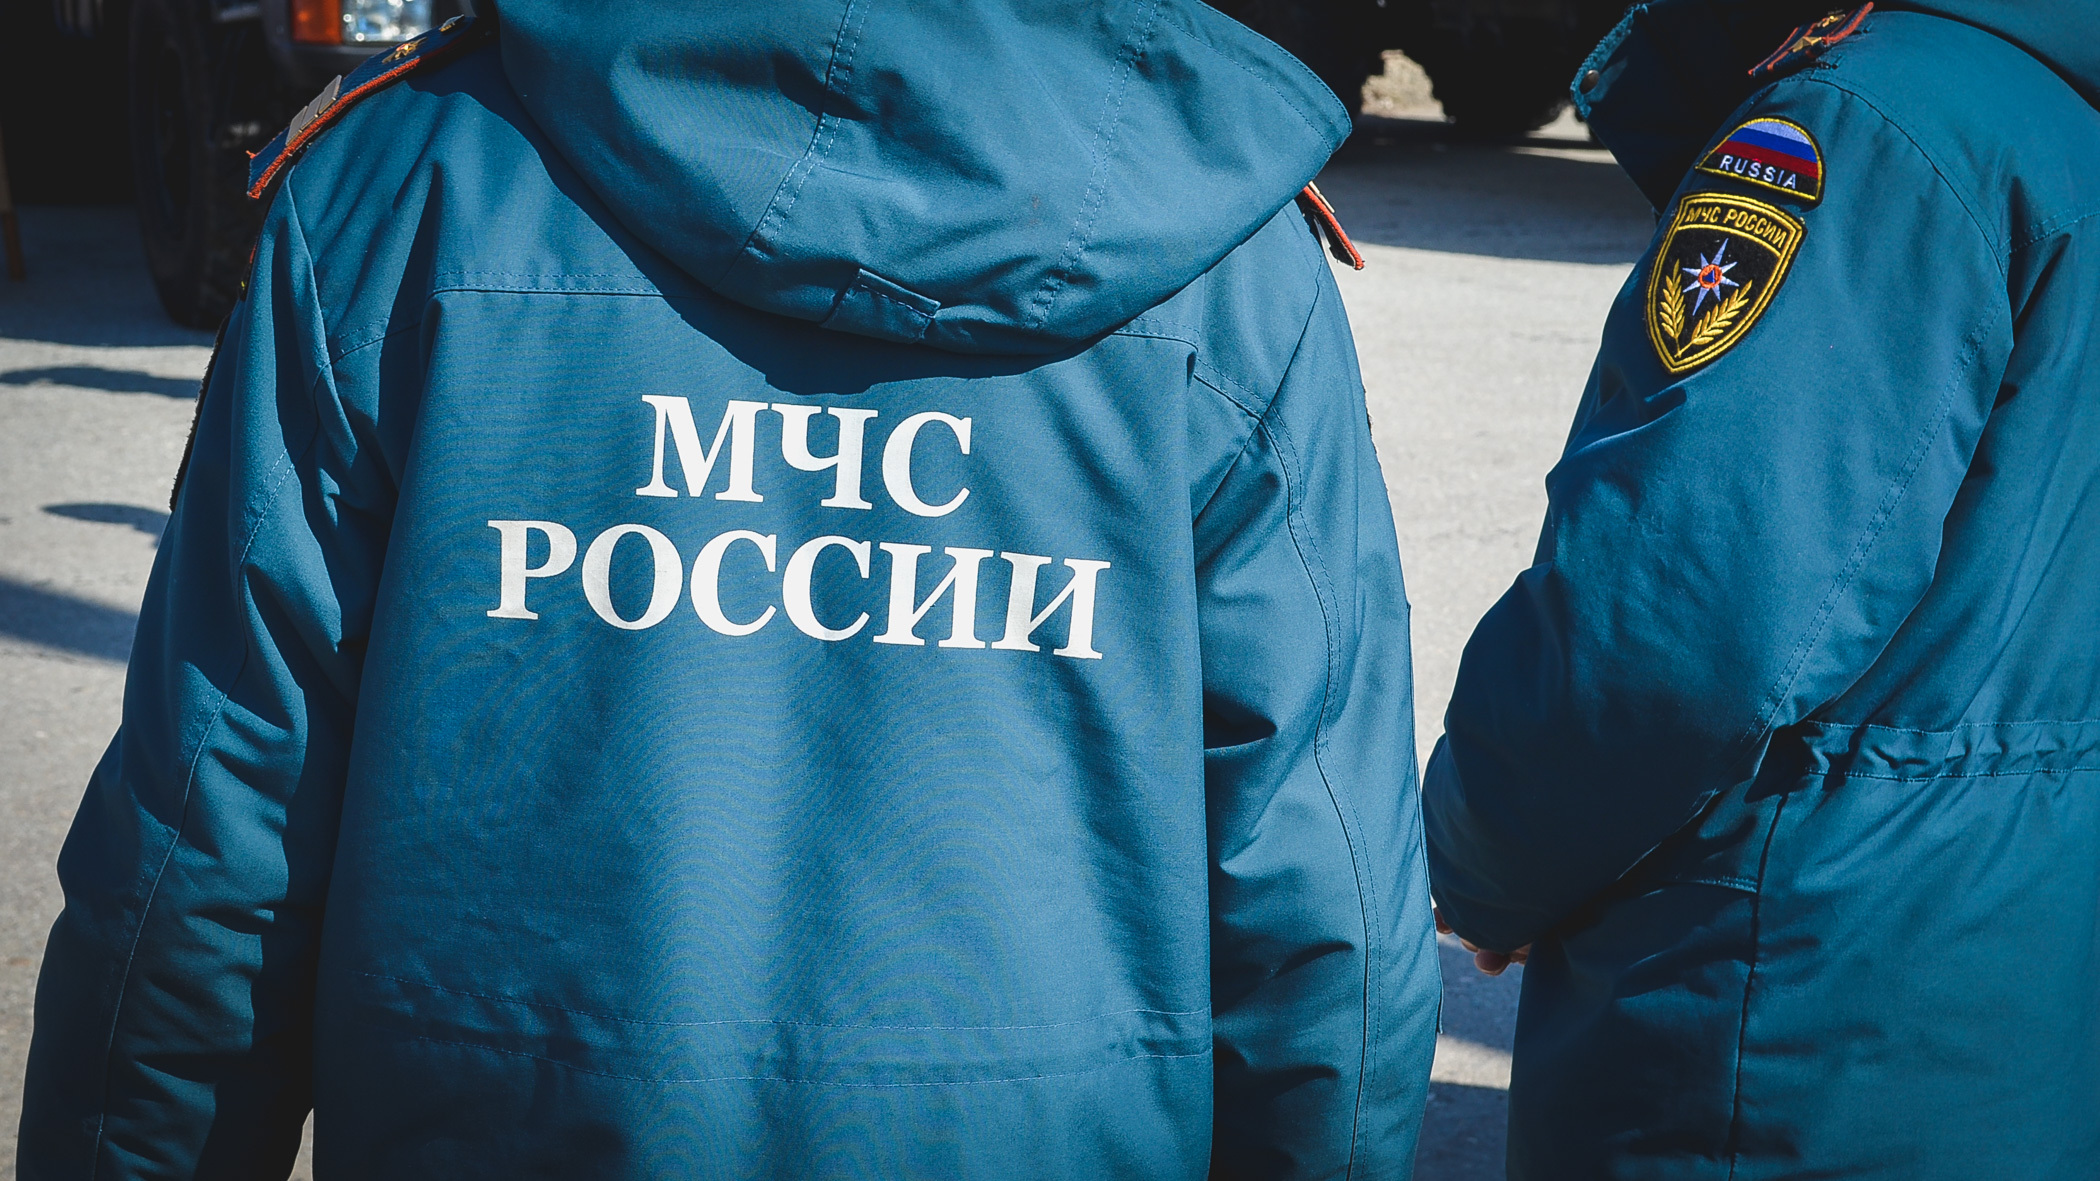 Полутонный снаряд обнаружили в Волгограде во время коммунальных работ